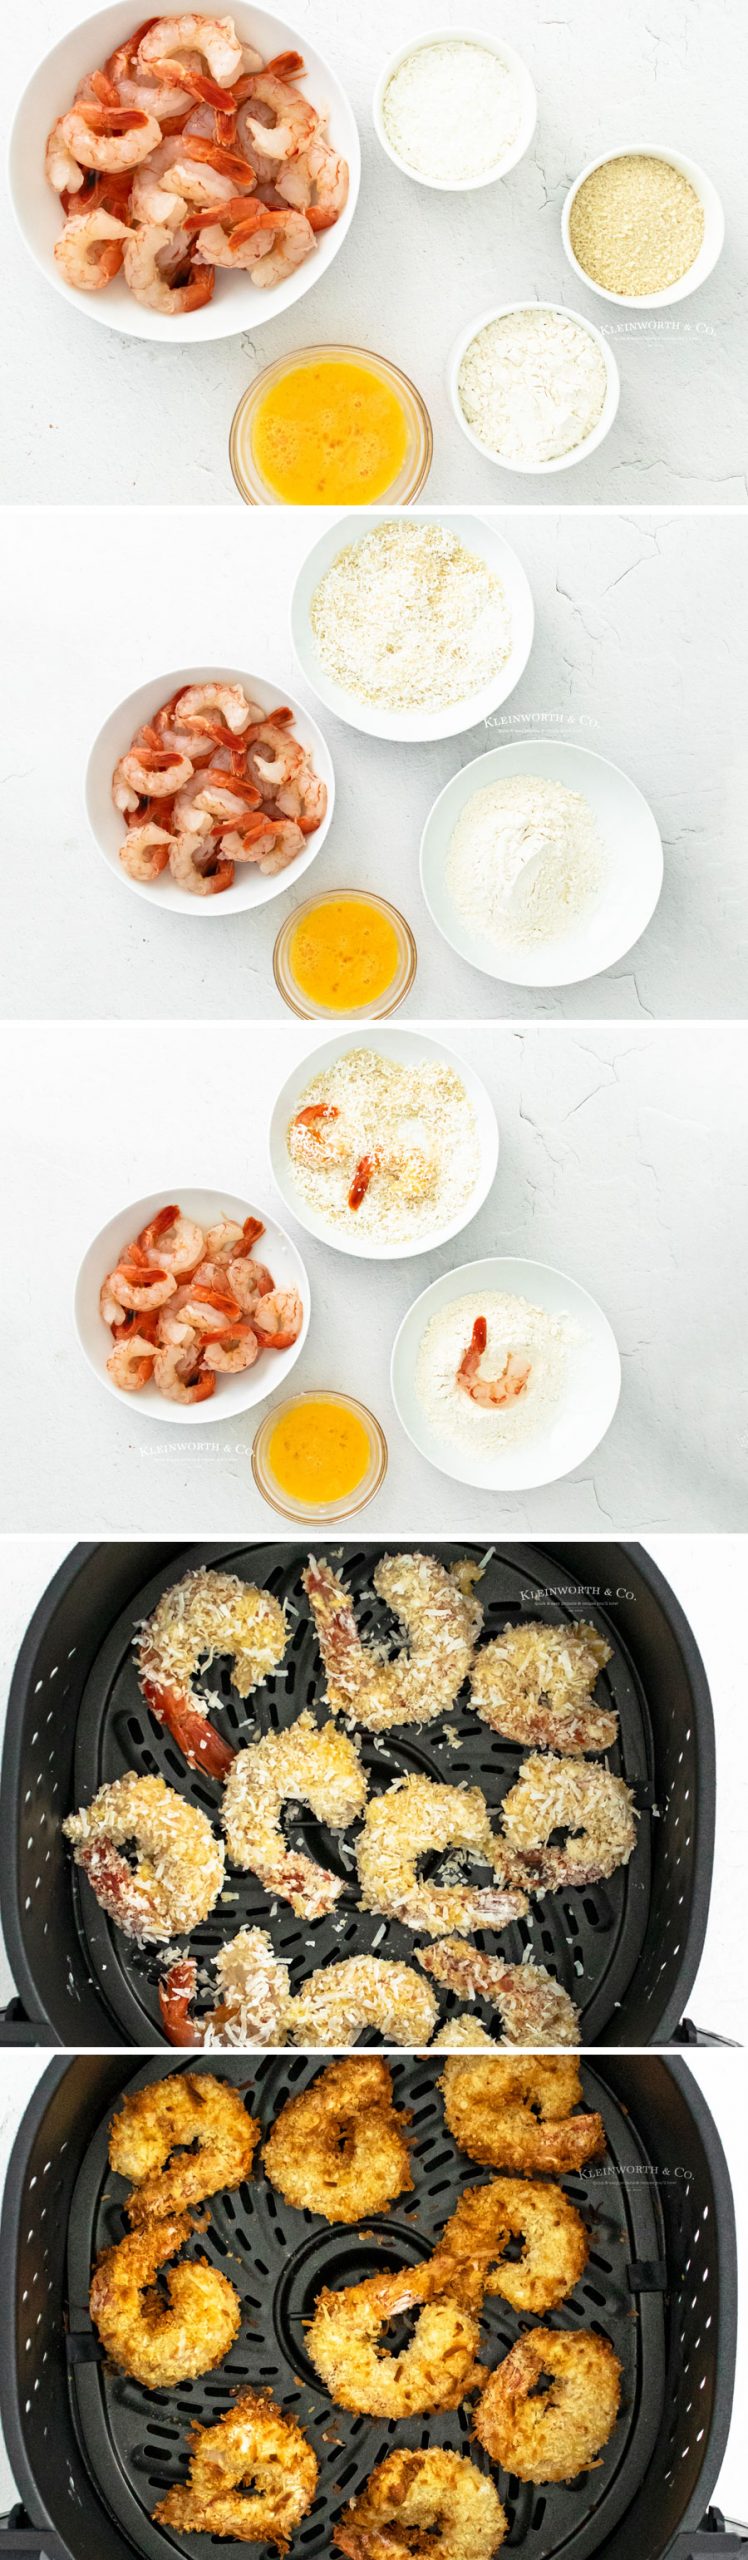 how to make coconut shrimp